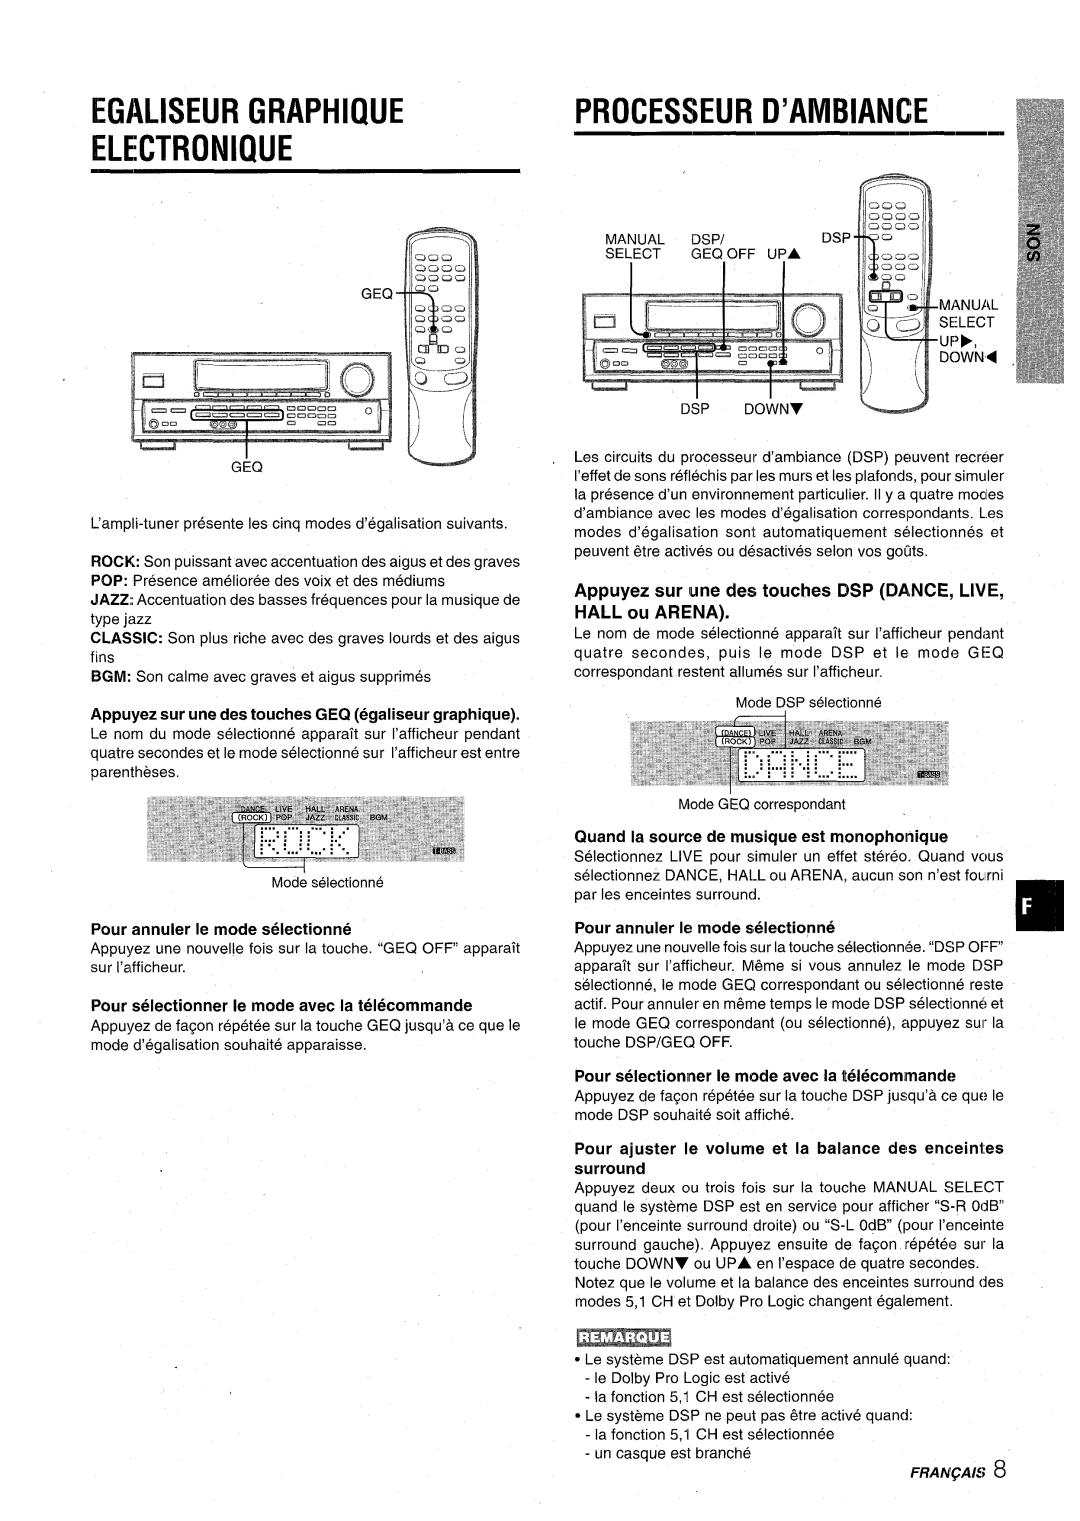 Aiwa AV-D30 Egaliseur Graphique Electronique, Processeur D’Ambiance, Appuyez sur une des touches GEQ egaliseur graphique 